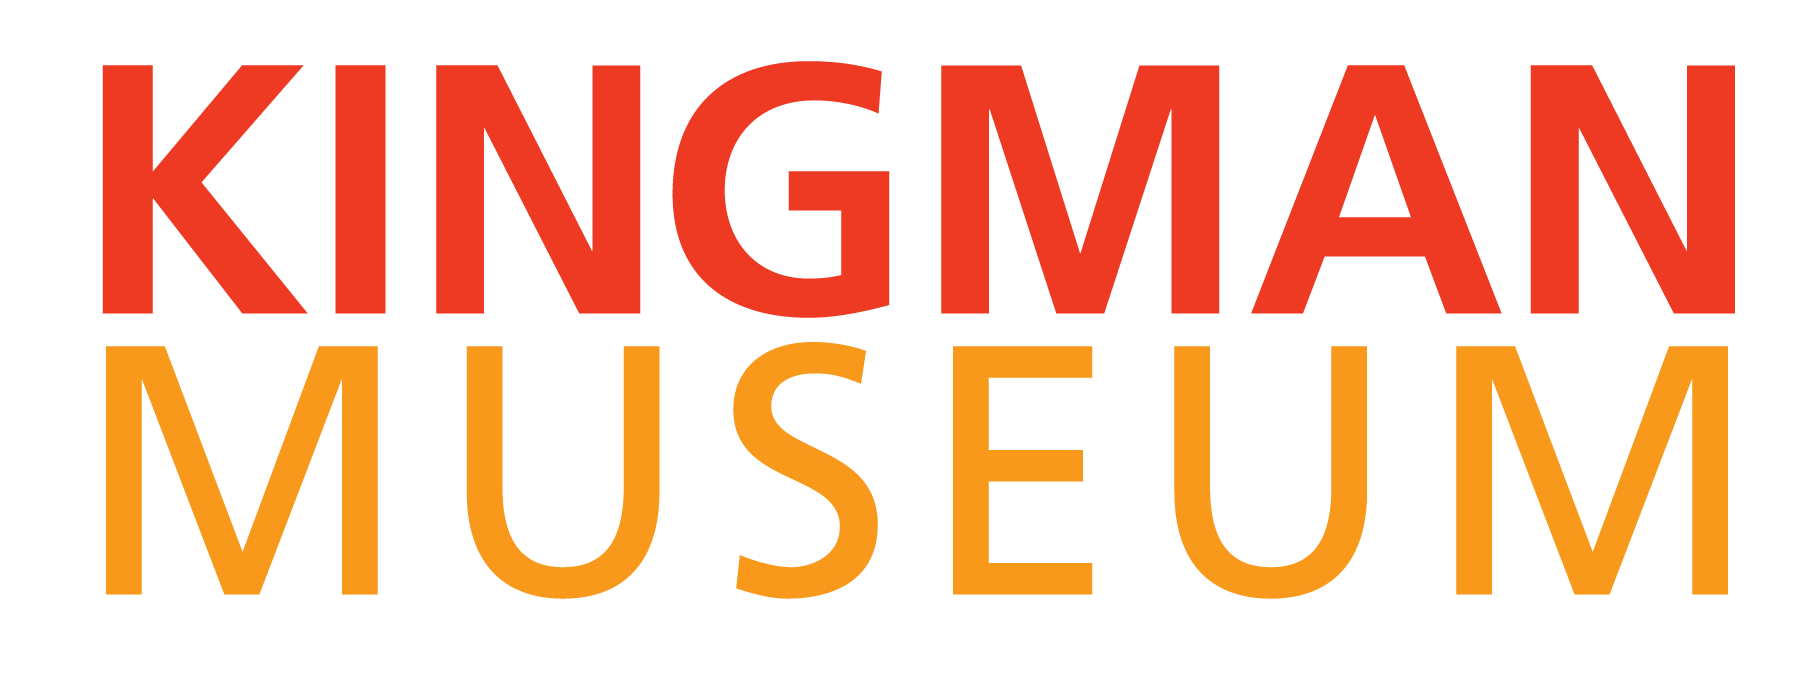 Kingman museum